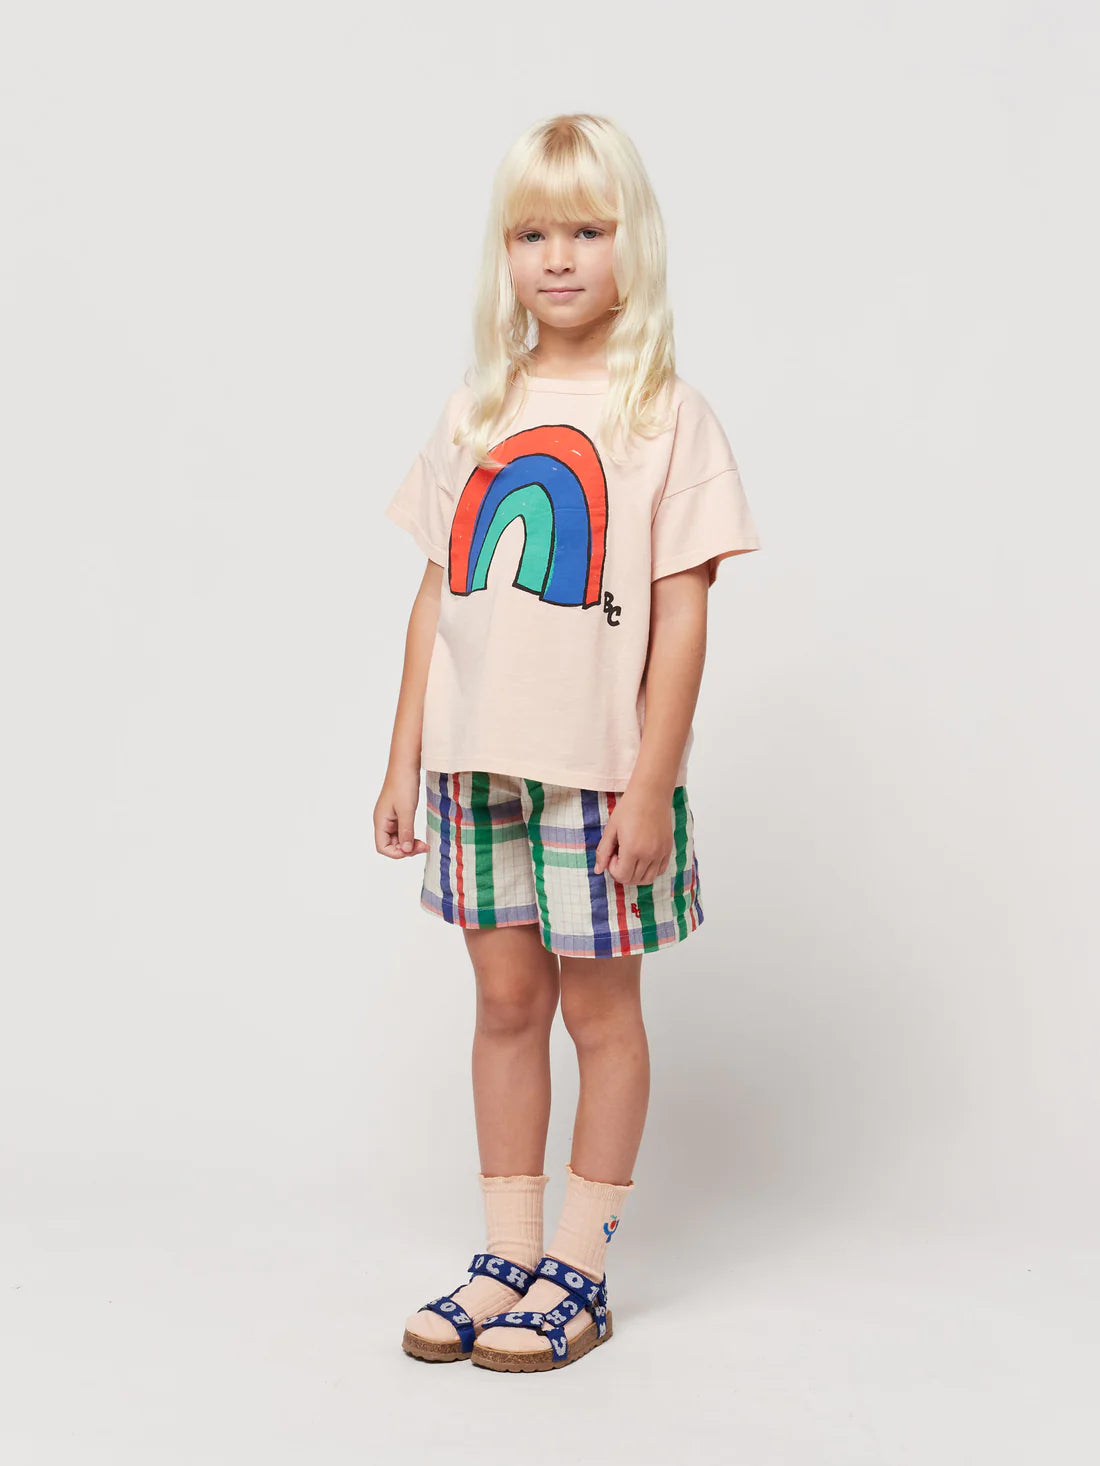 Bobo Choses - Kinder T-Shirt Regenbogen